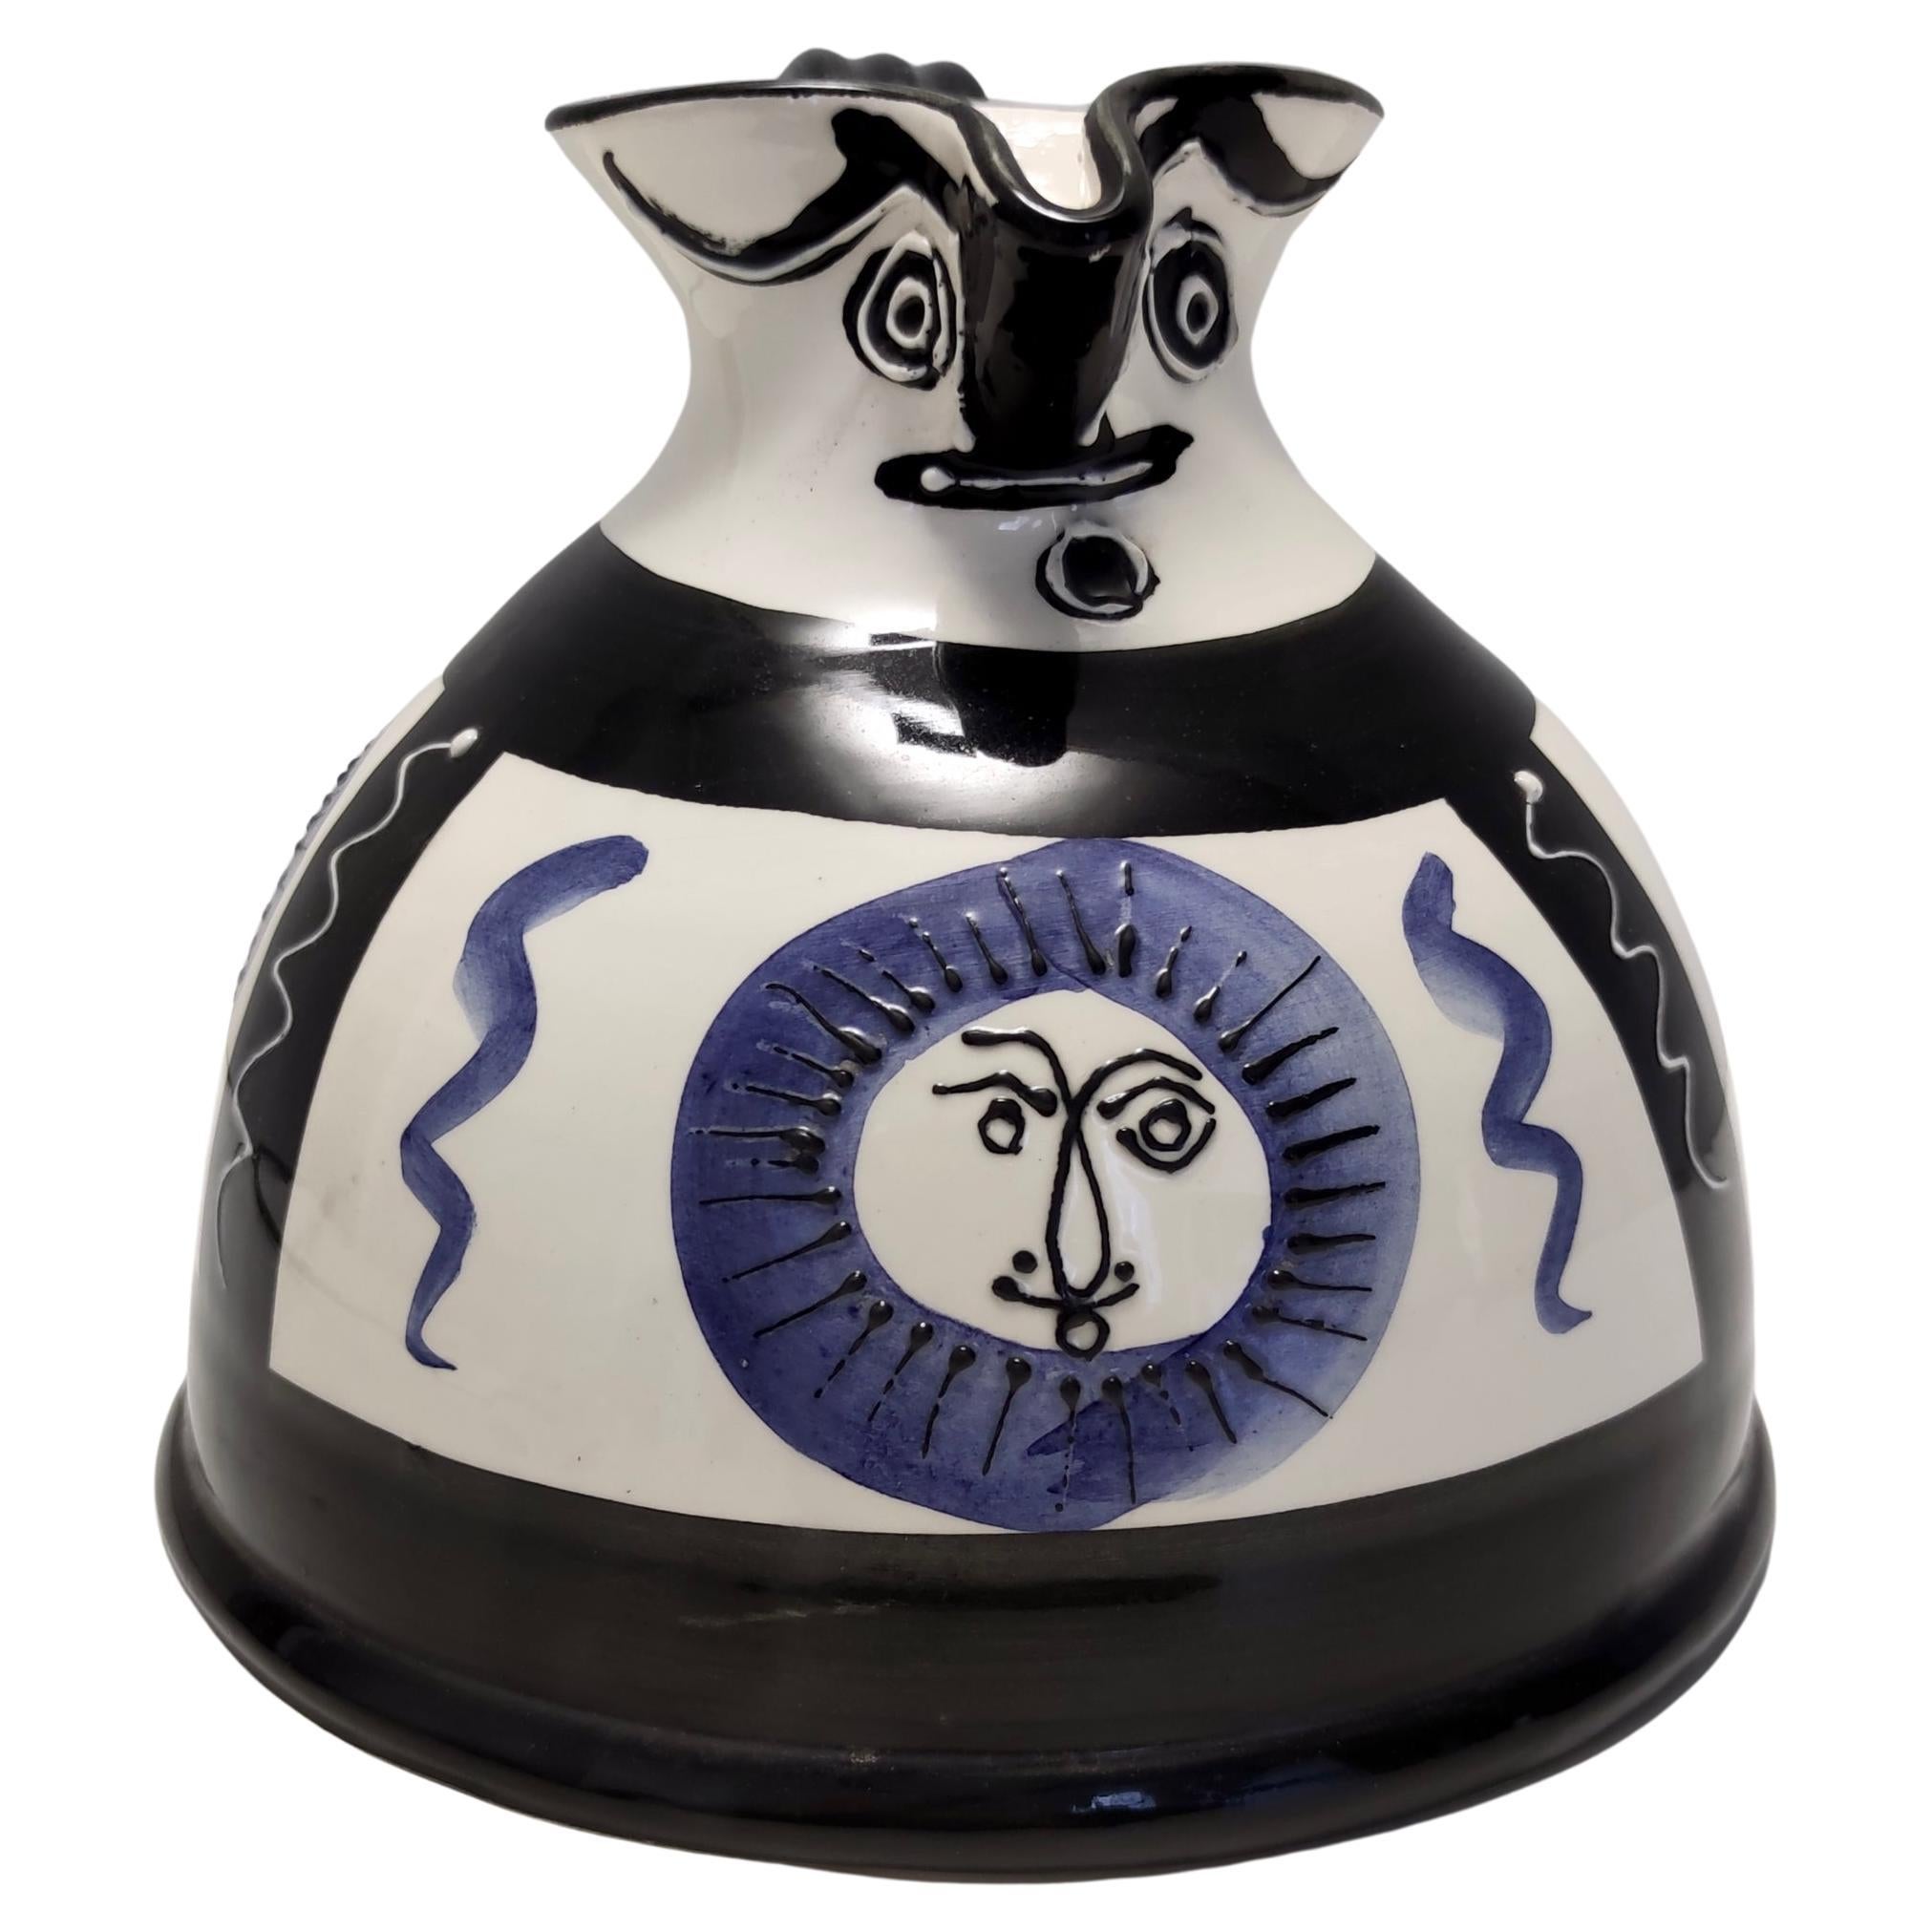 Weißer, schwarzer und blauer handbemalter Keramikkrug / Vase im Stil von Picasso